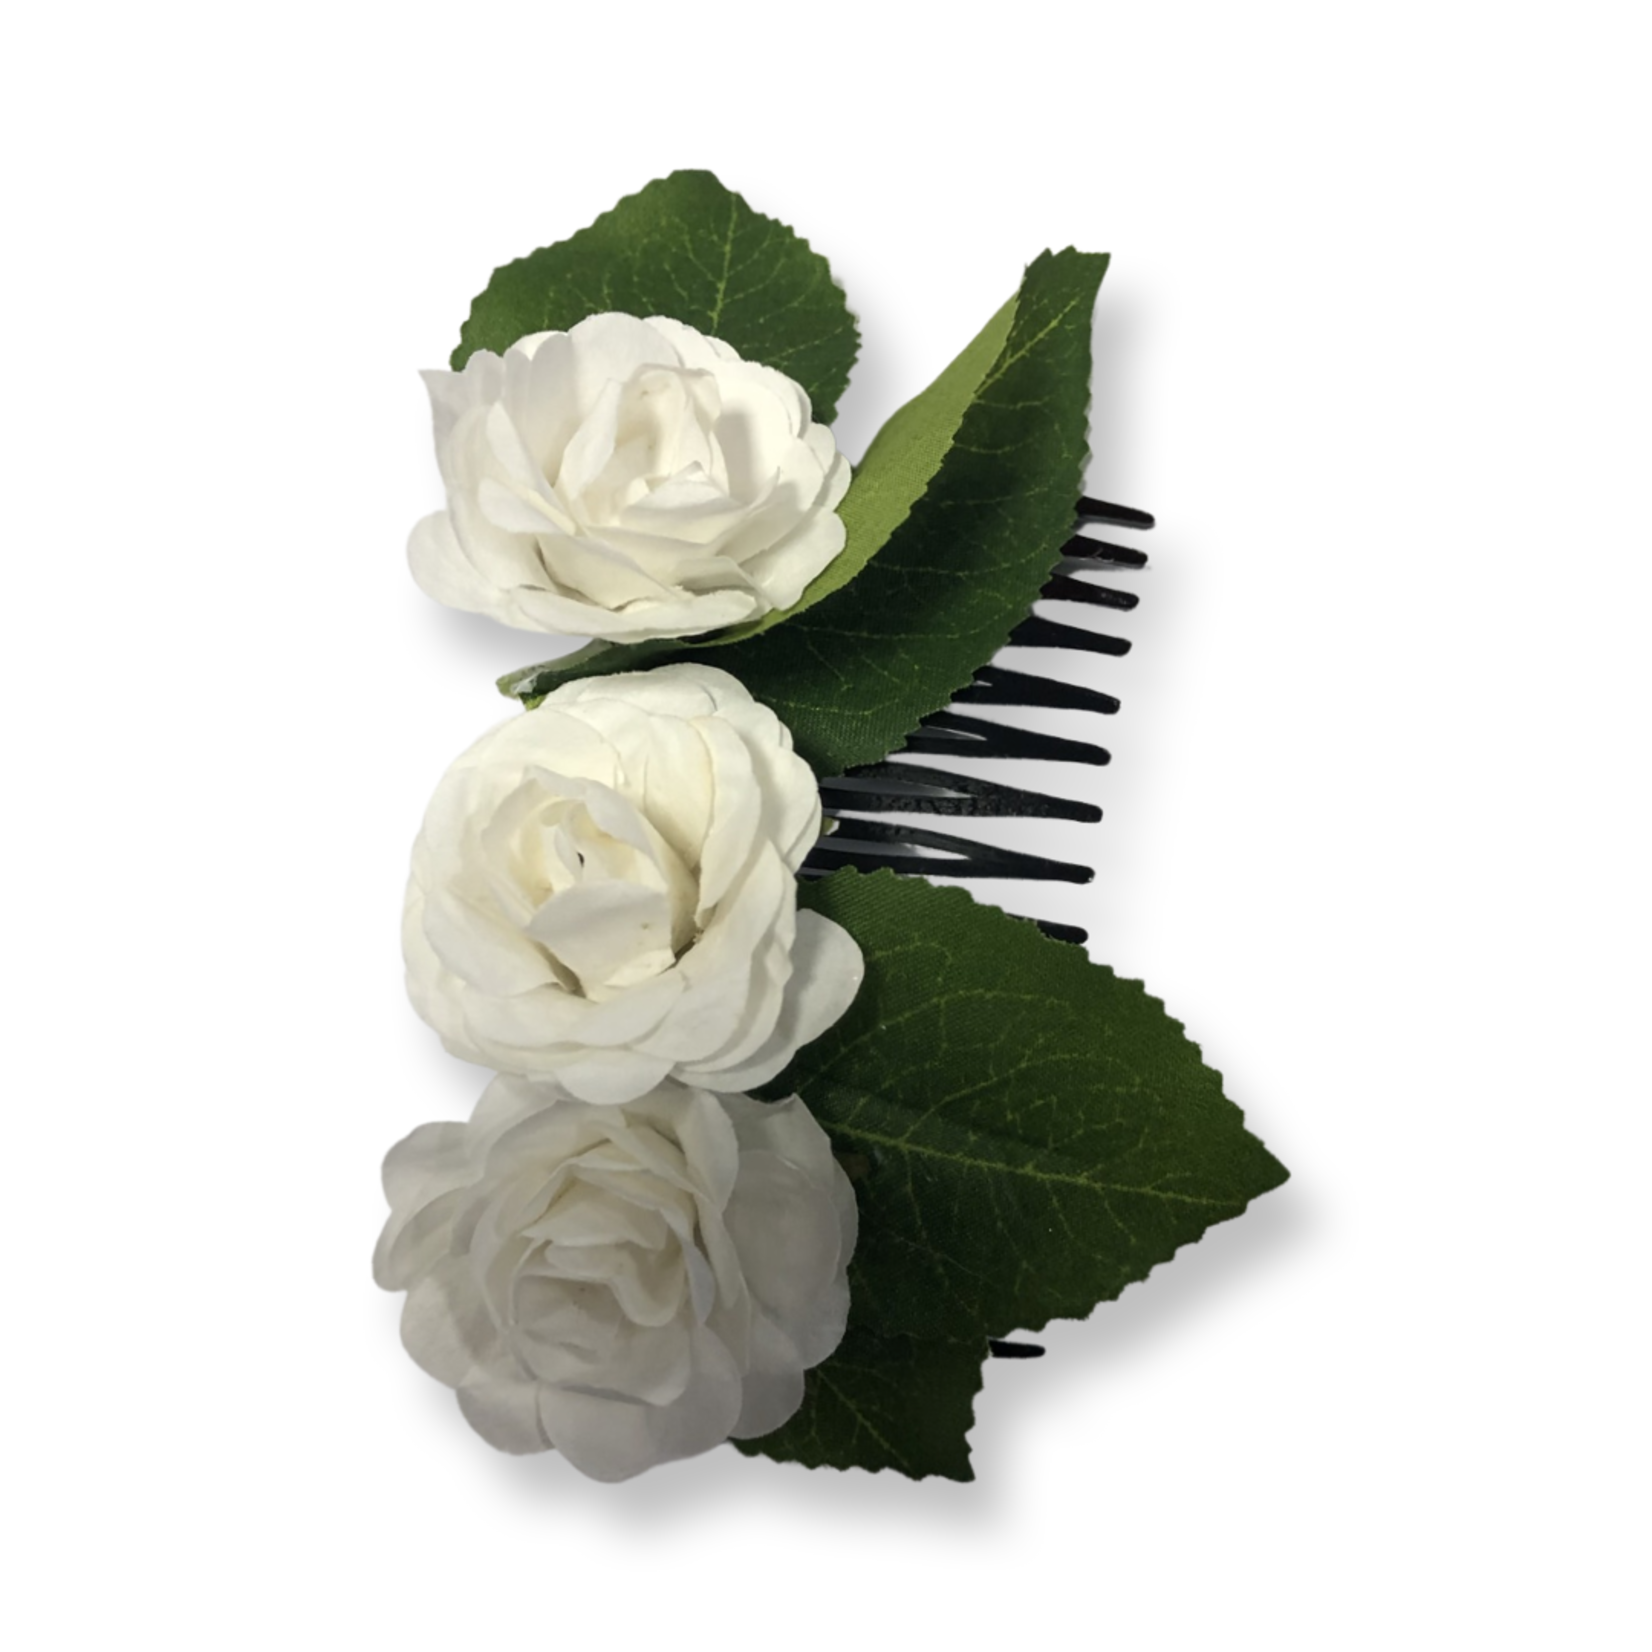 OPO White Small Rose Comb